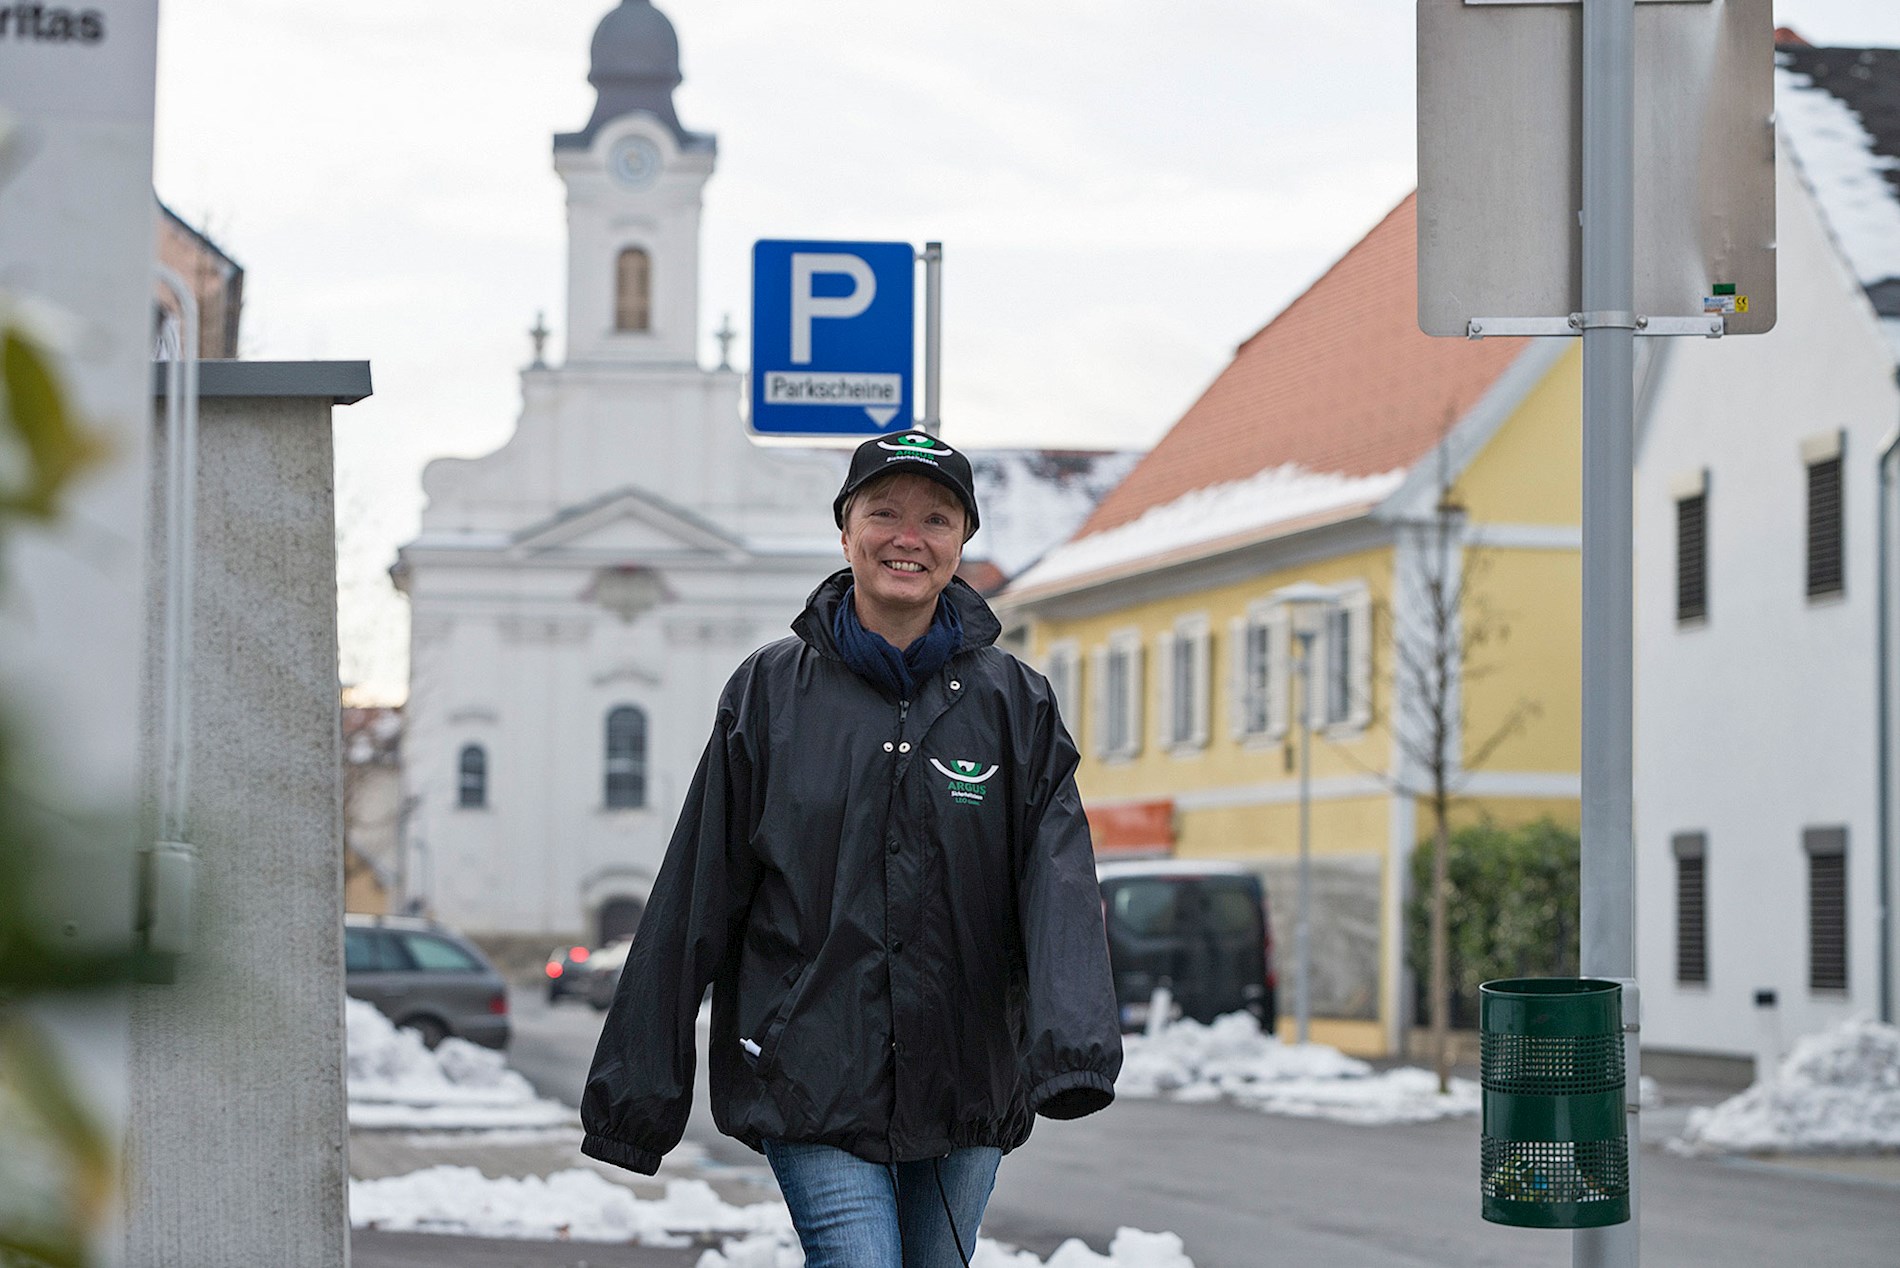 Eine Frau trägt eine schwarze Regenjacke und eine schwarze Kappe mit dem ARGUS-Logo. Sie lächelt und geht auf einer Straße in unsere Richtung.